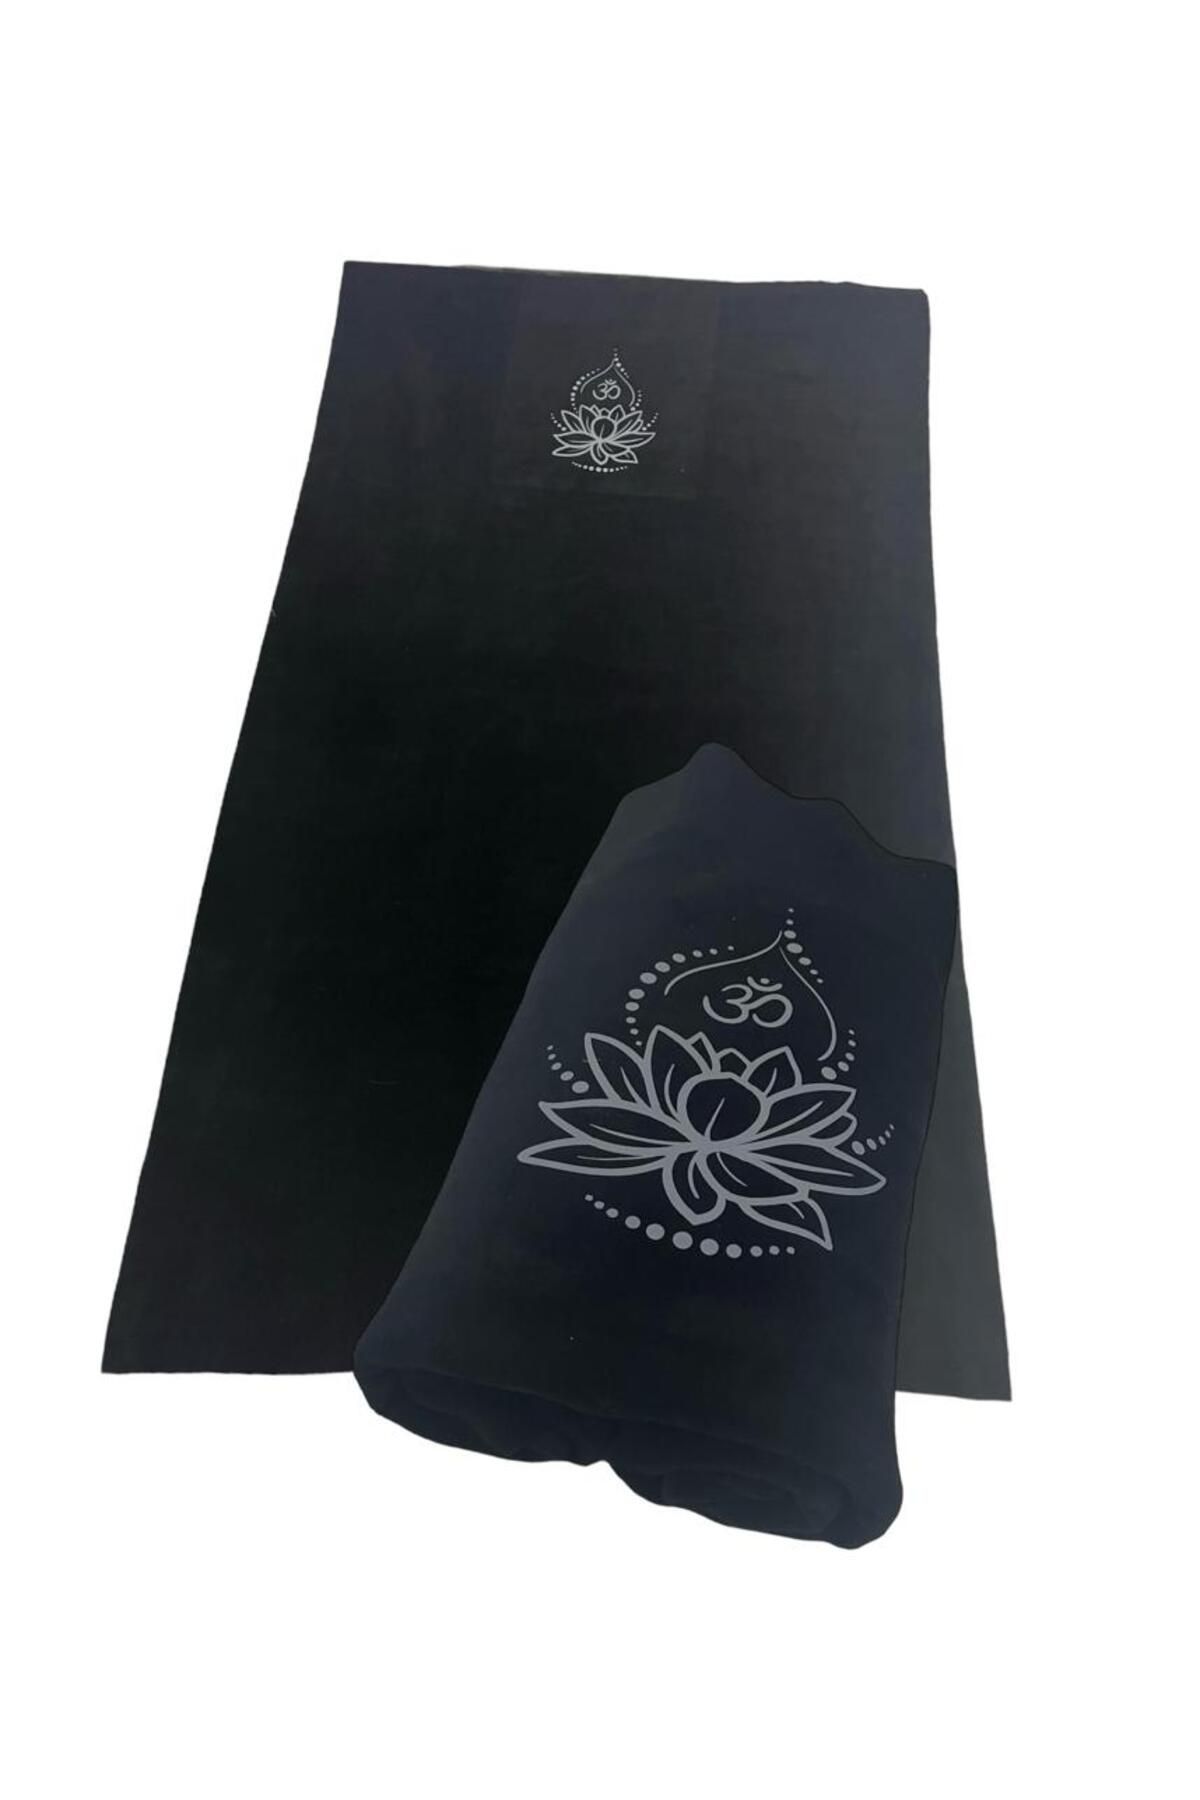 YOGAEZO Lotus Çiçeği Baskılı Yoga Battaniyesi / Siyah Yoga Battaniyesi / Polar Yoga Battaniyesi